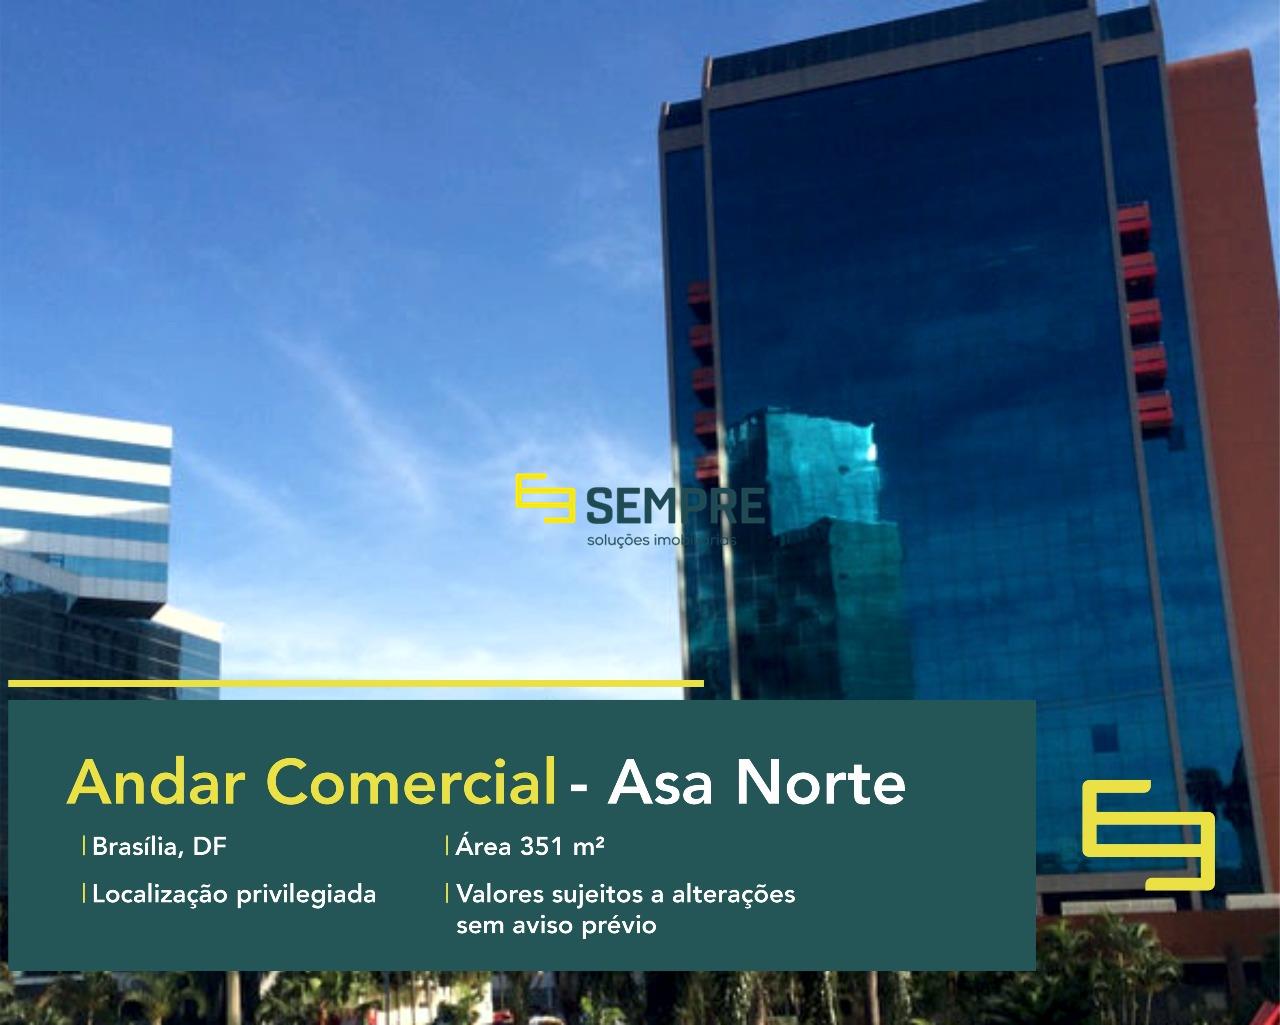 Andar corrido para alugar em Brasília - Edifício Number One, excelente localização. O estabelecimento comercial conta com área de 351 m².